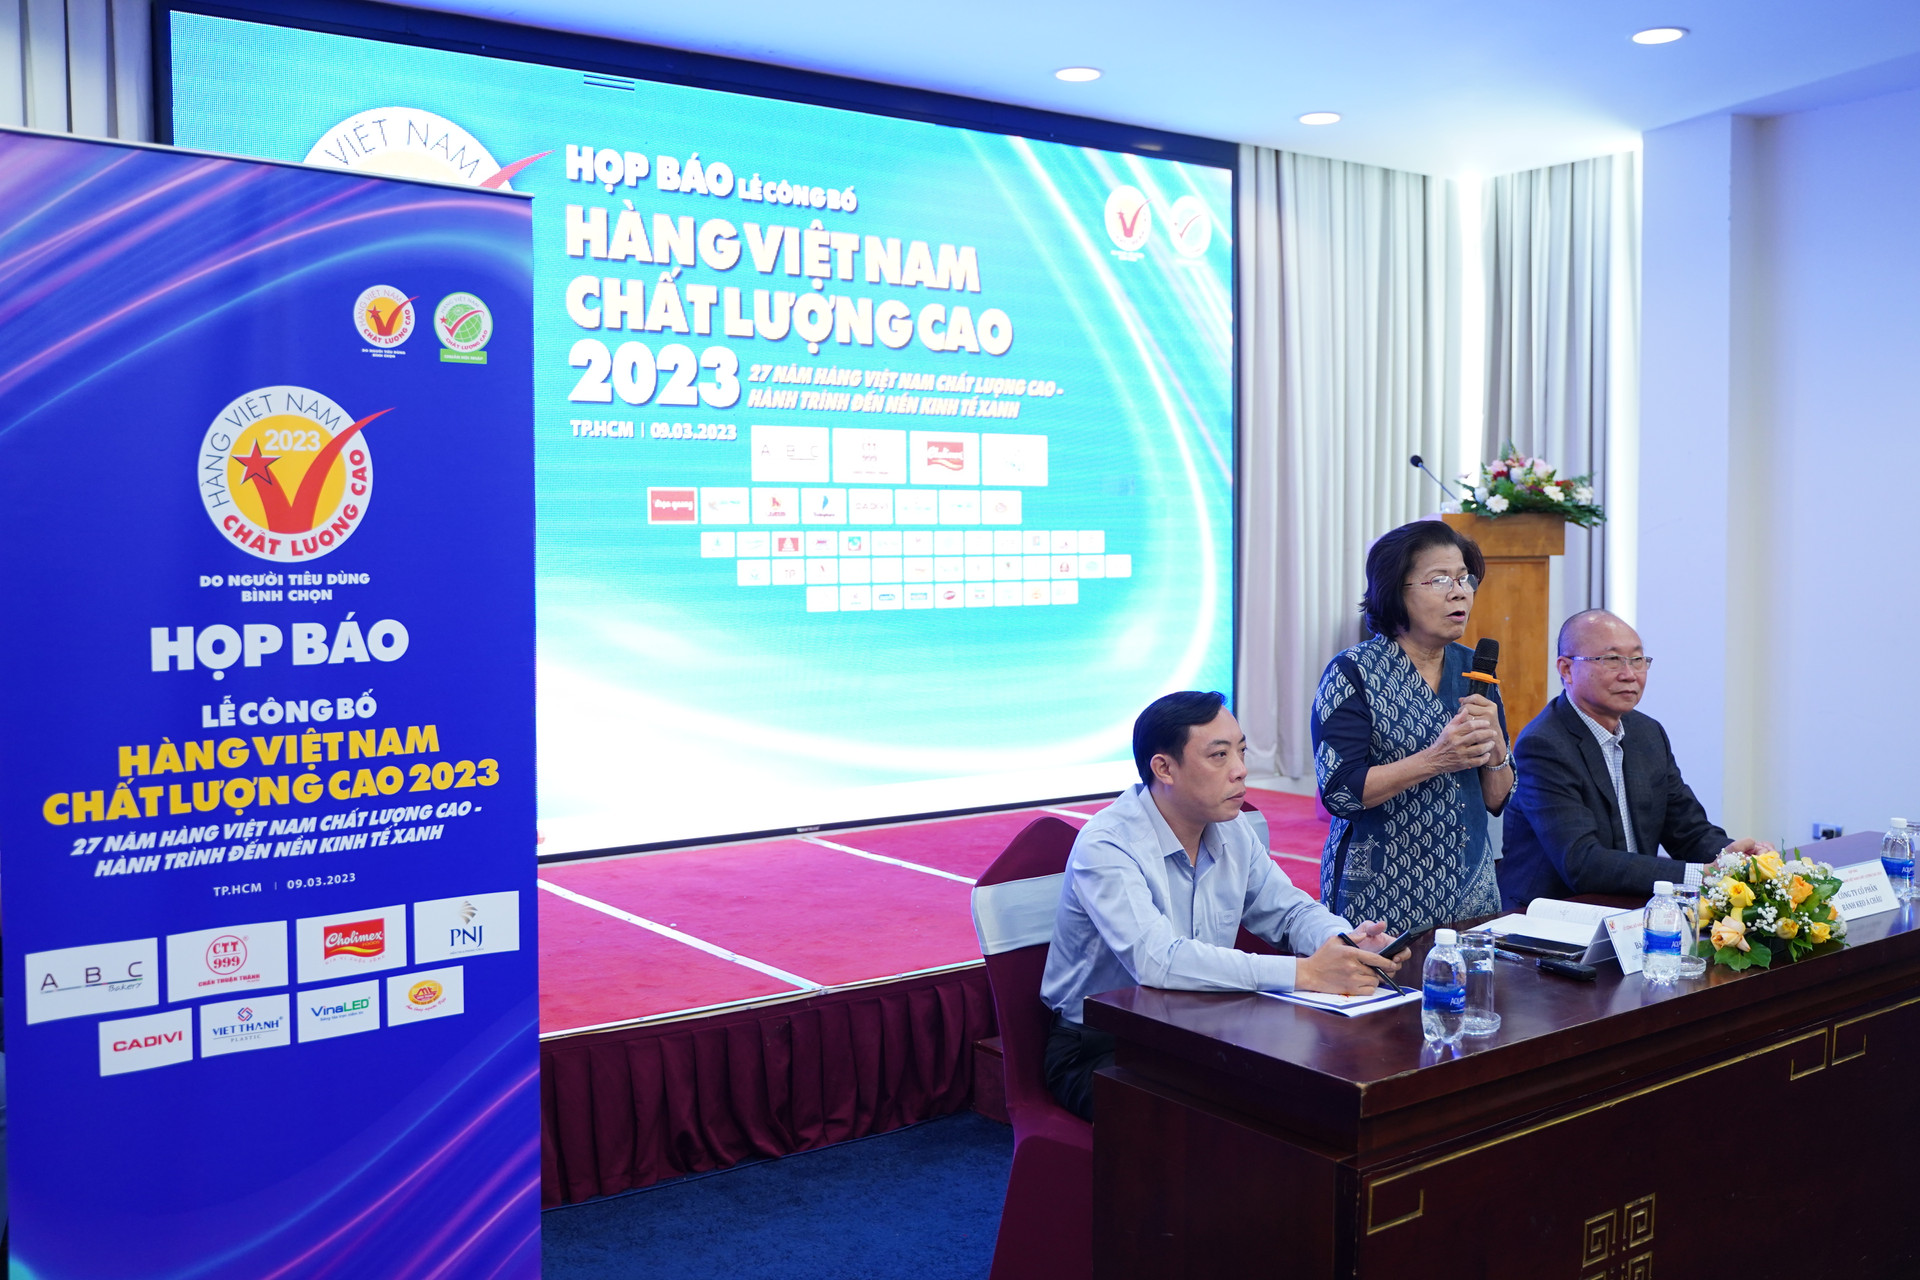 Lễ công bố hàng Việt Nam chất lượng cao 2023.